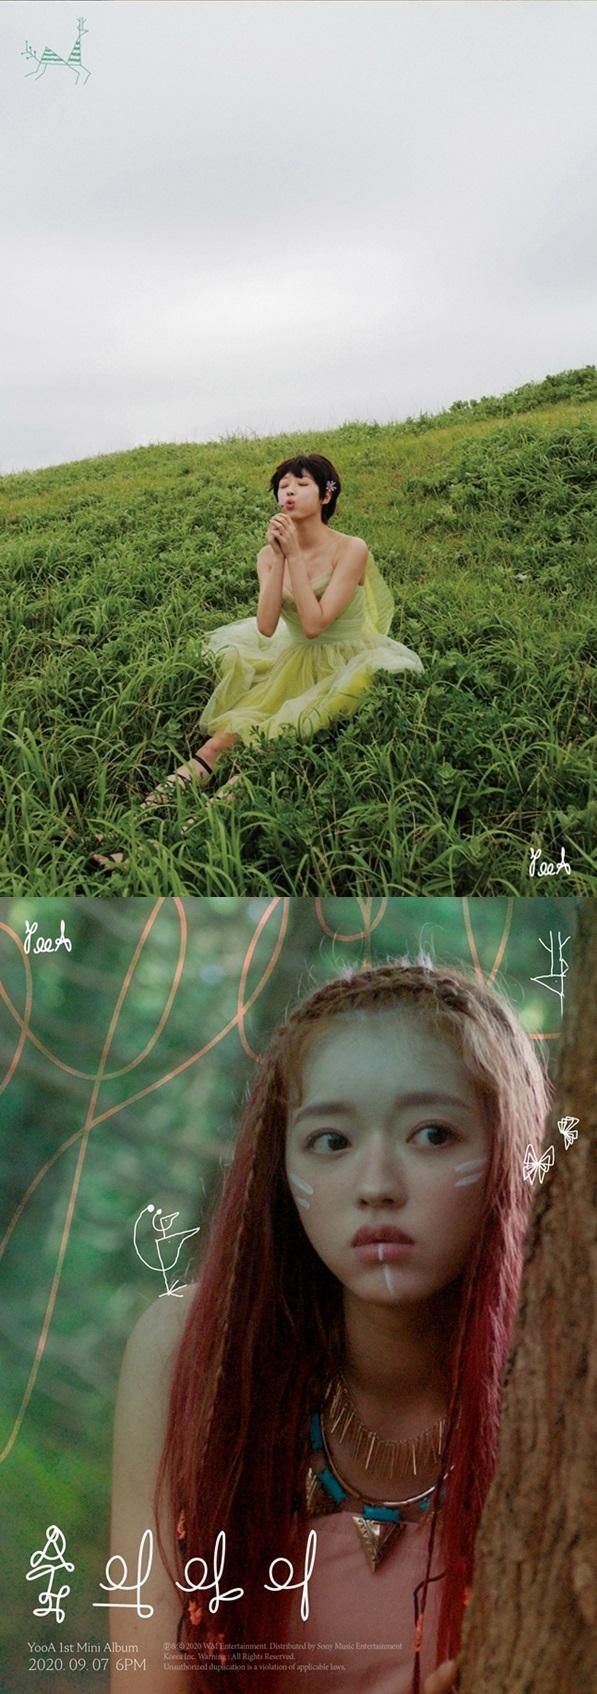 오마이걸 유아의 티저 포스터가 공개됐다. WM엔터테인먼트 제공